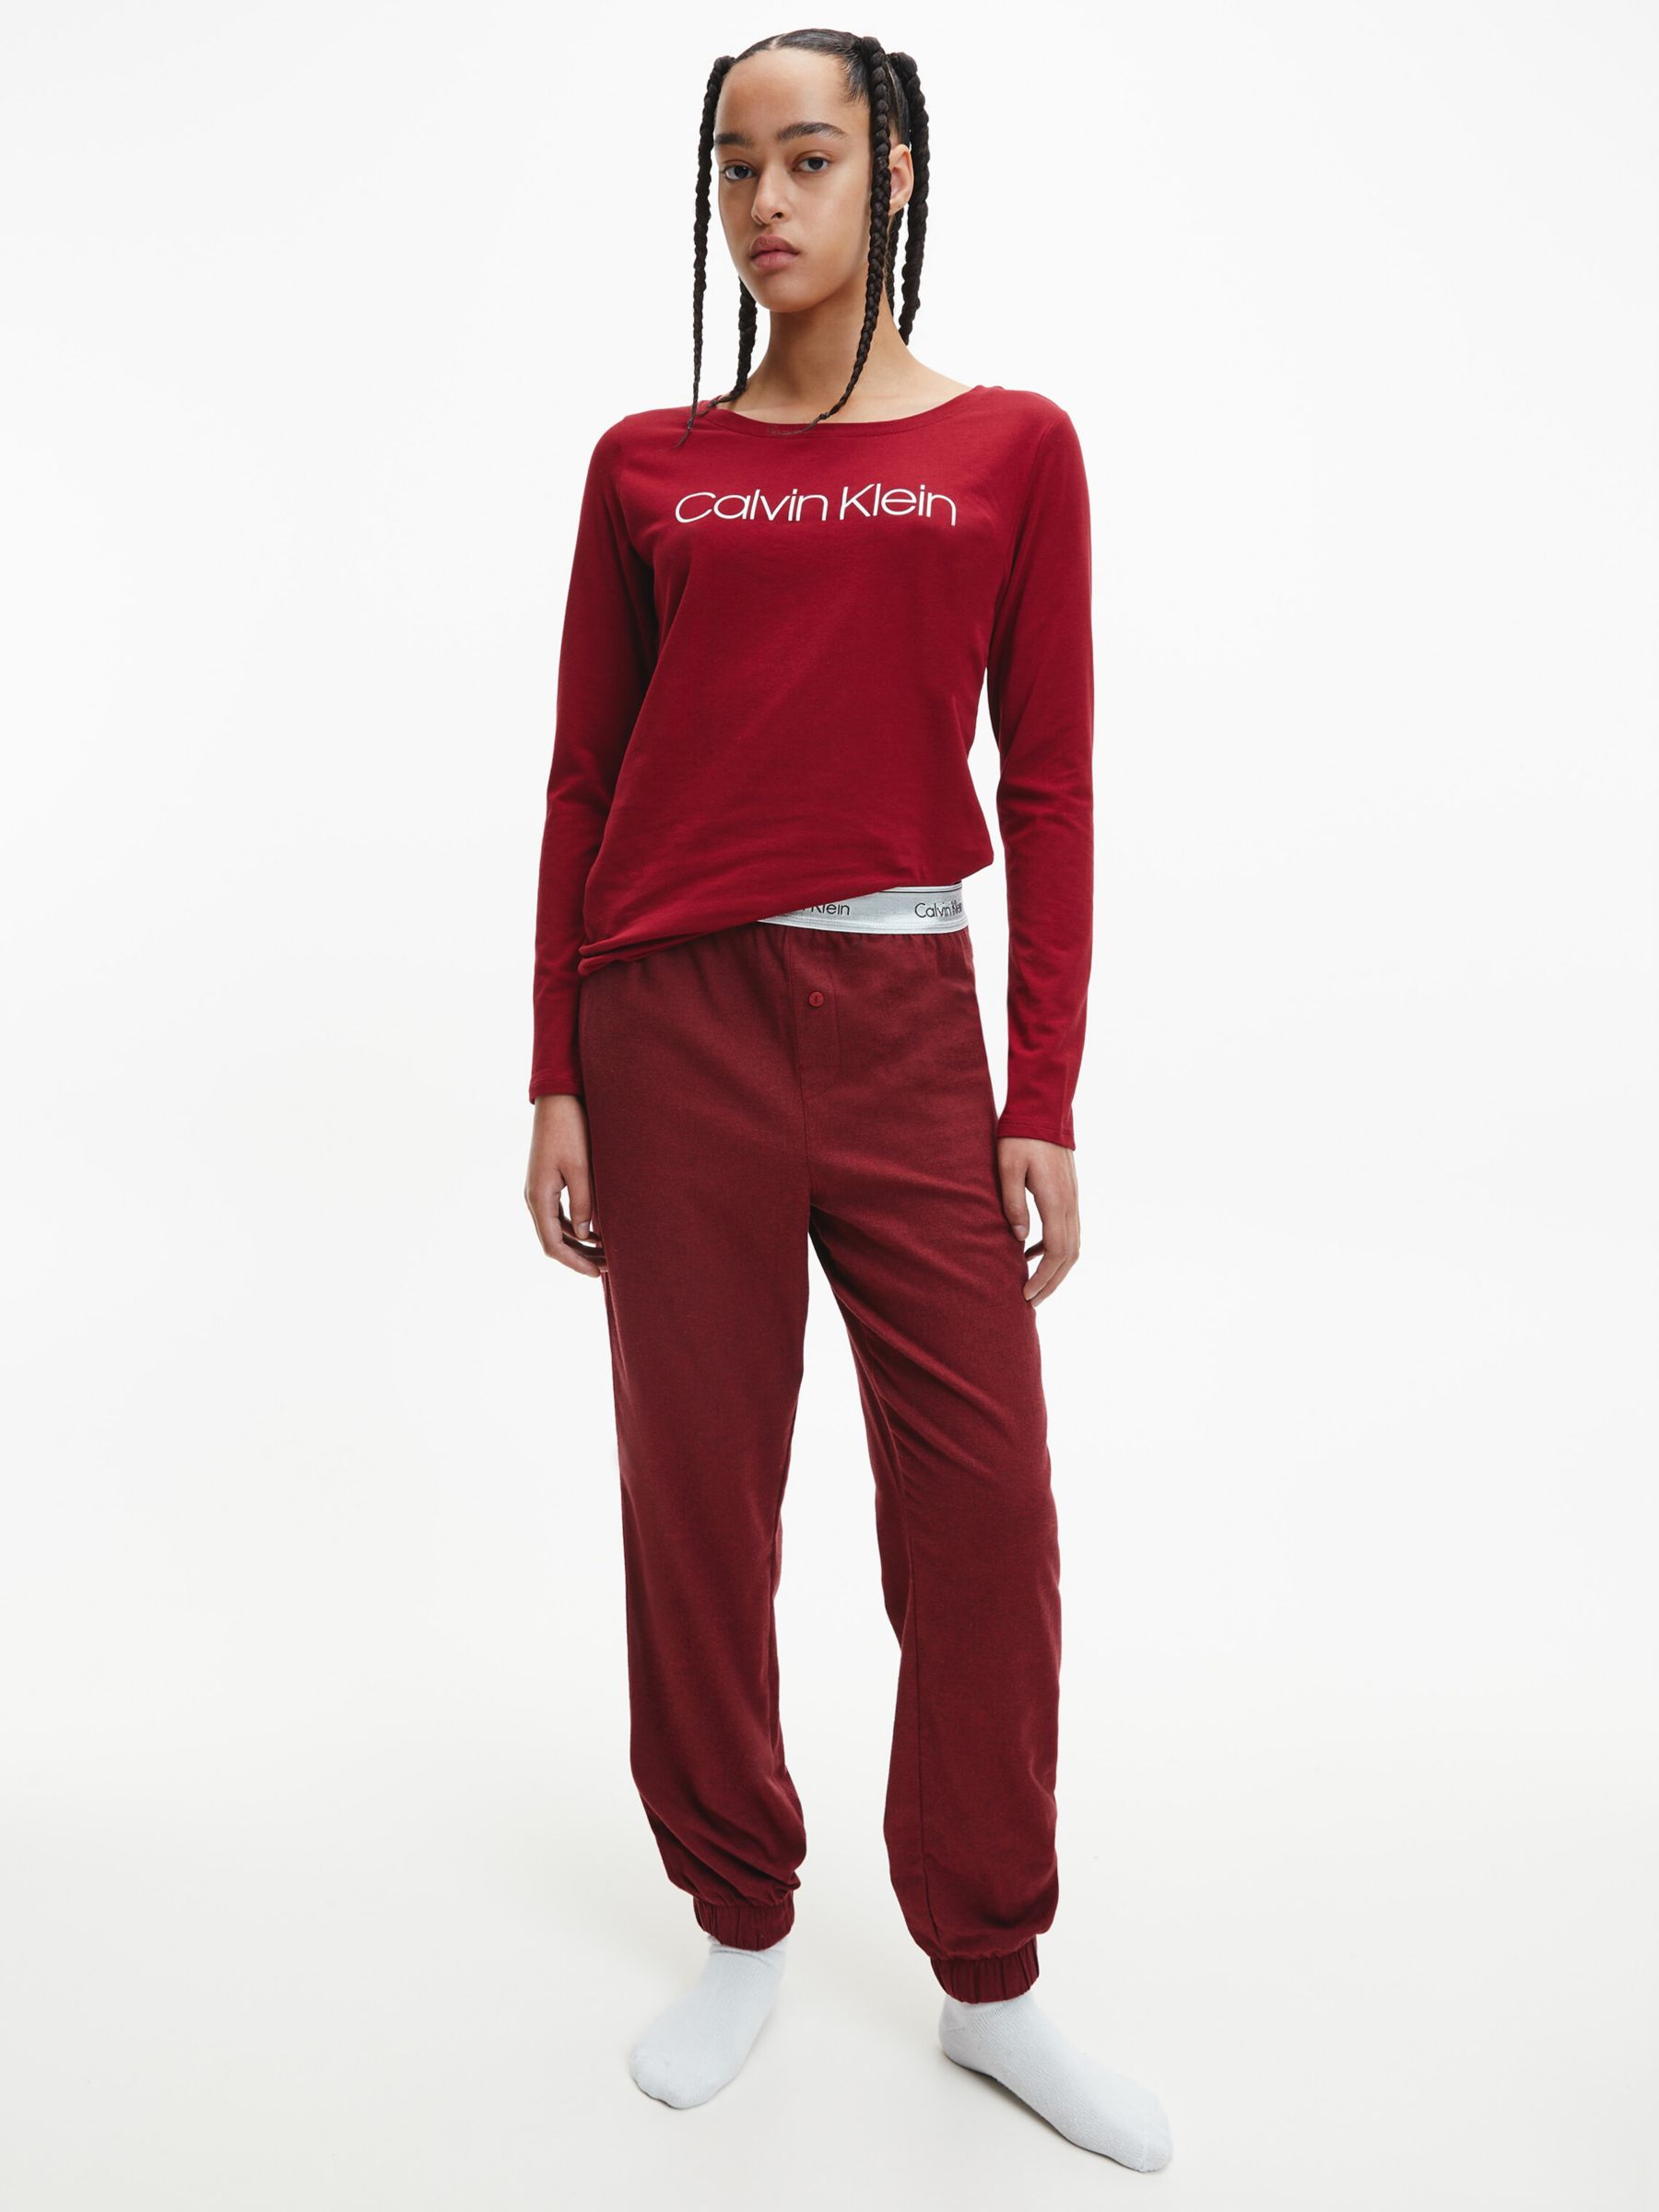 Calvin Klein Women's Nightwear | John Lewis & Partners